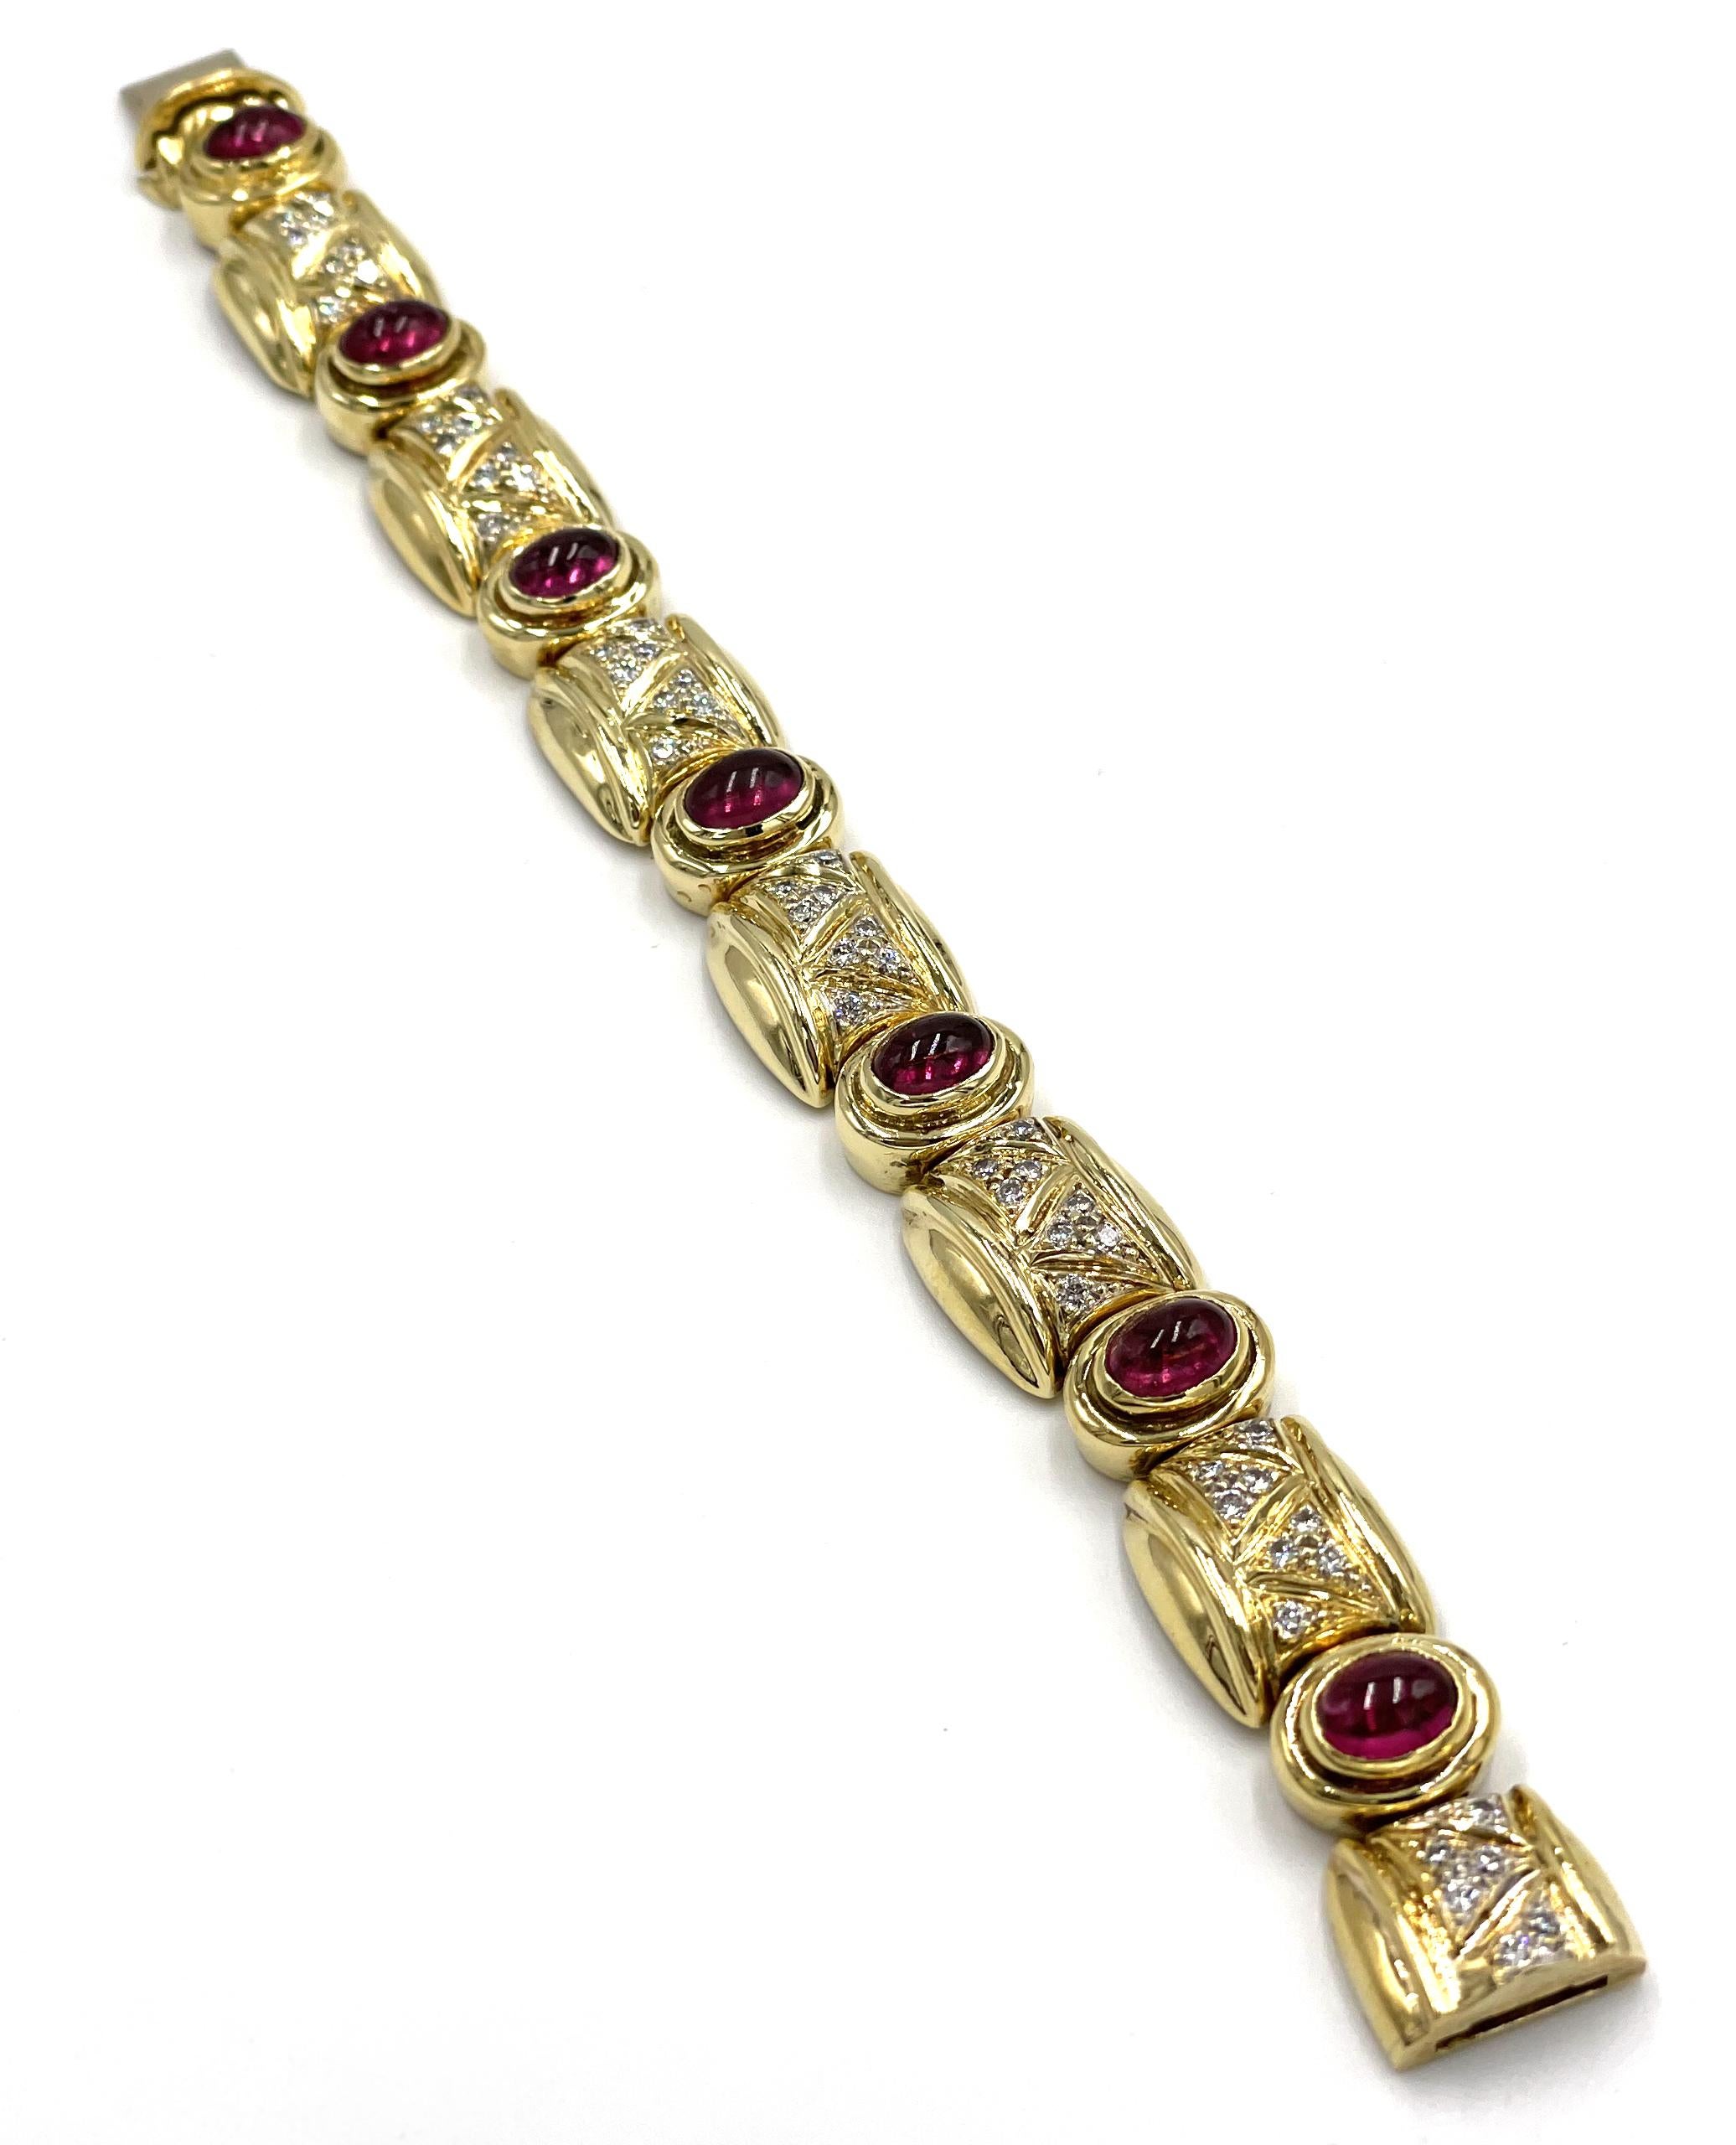 Bracelet vintage en or jaune 18K avec 55 diamants ronds totalisant 1,52 carats (couleur G, clarté VS) et avec 7 tourmalines roses ovales taillées en cabochon qui mesurent 5X7 millimètres chacune. La longueur du bracelet est d'environ 6,5 pouces et